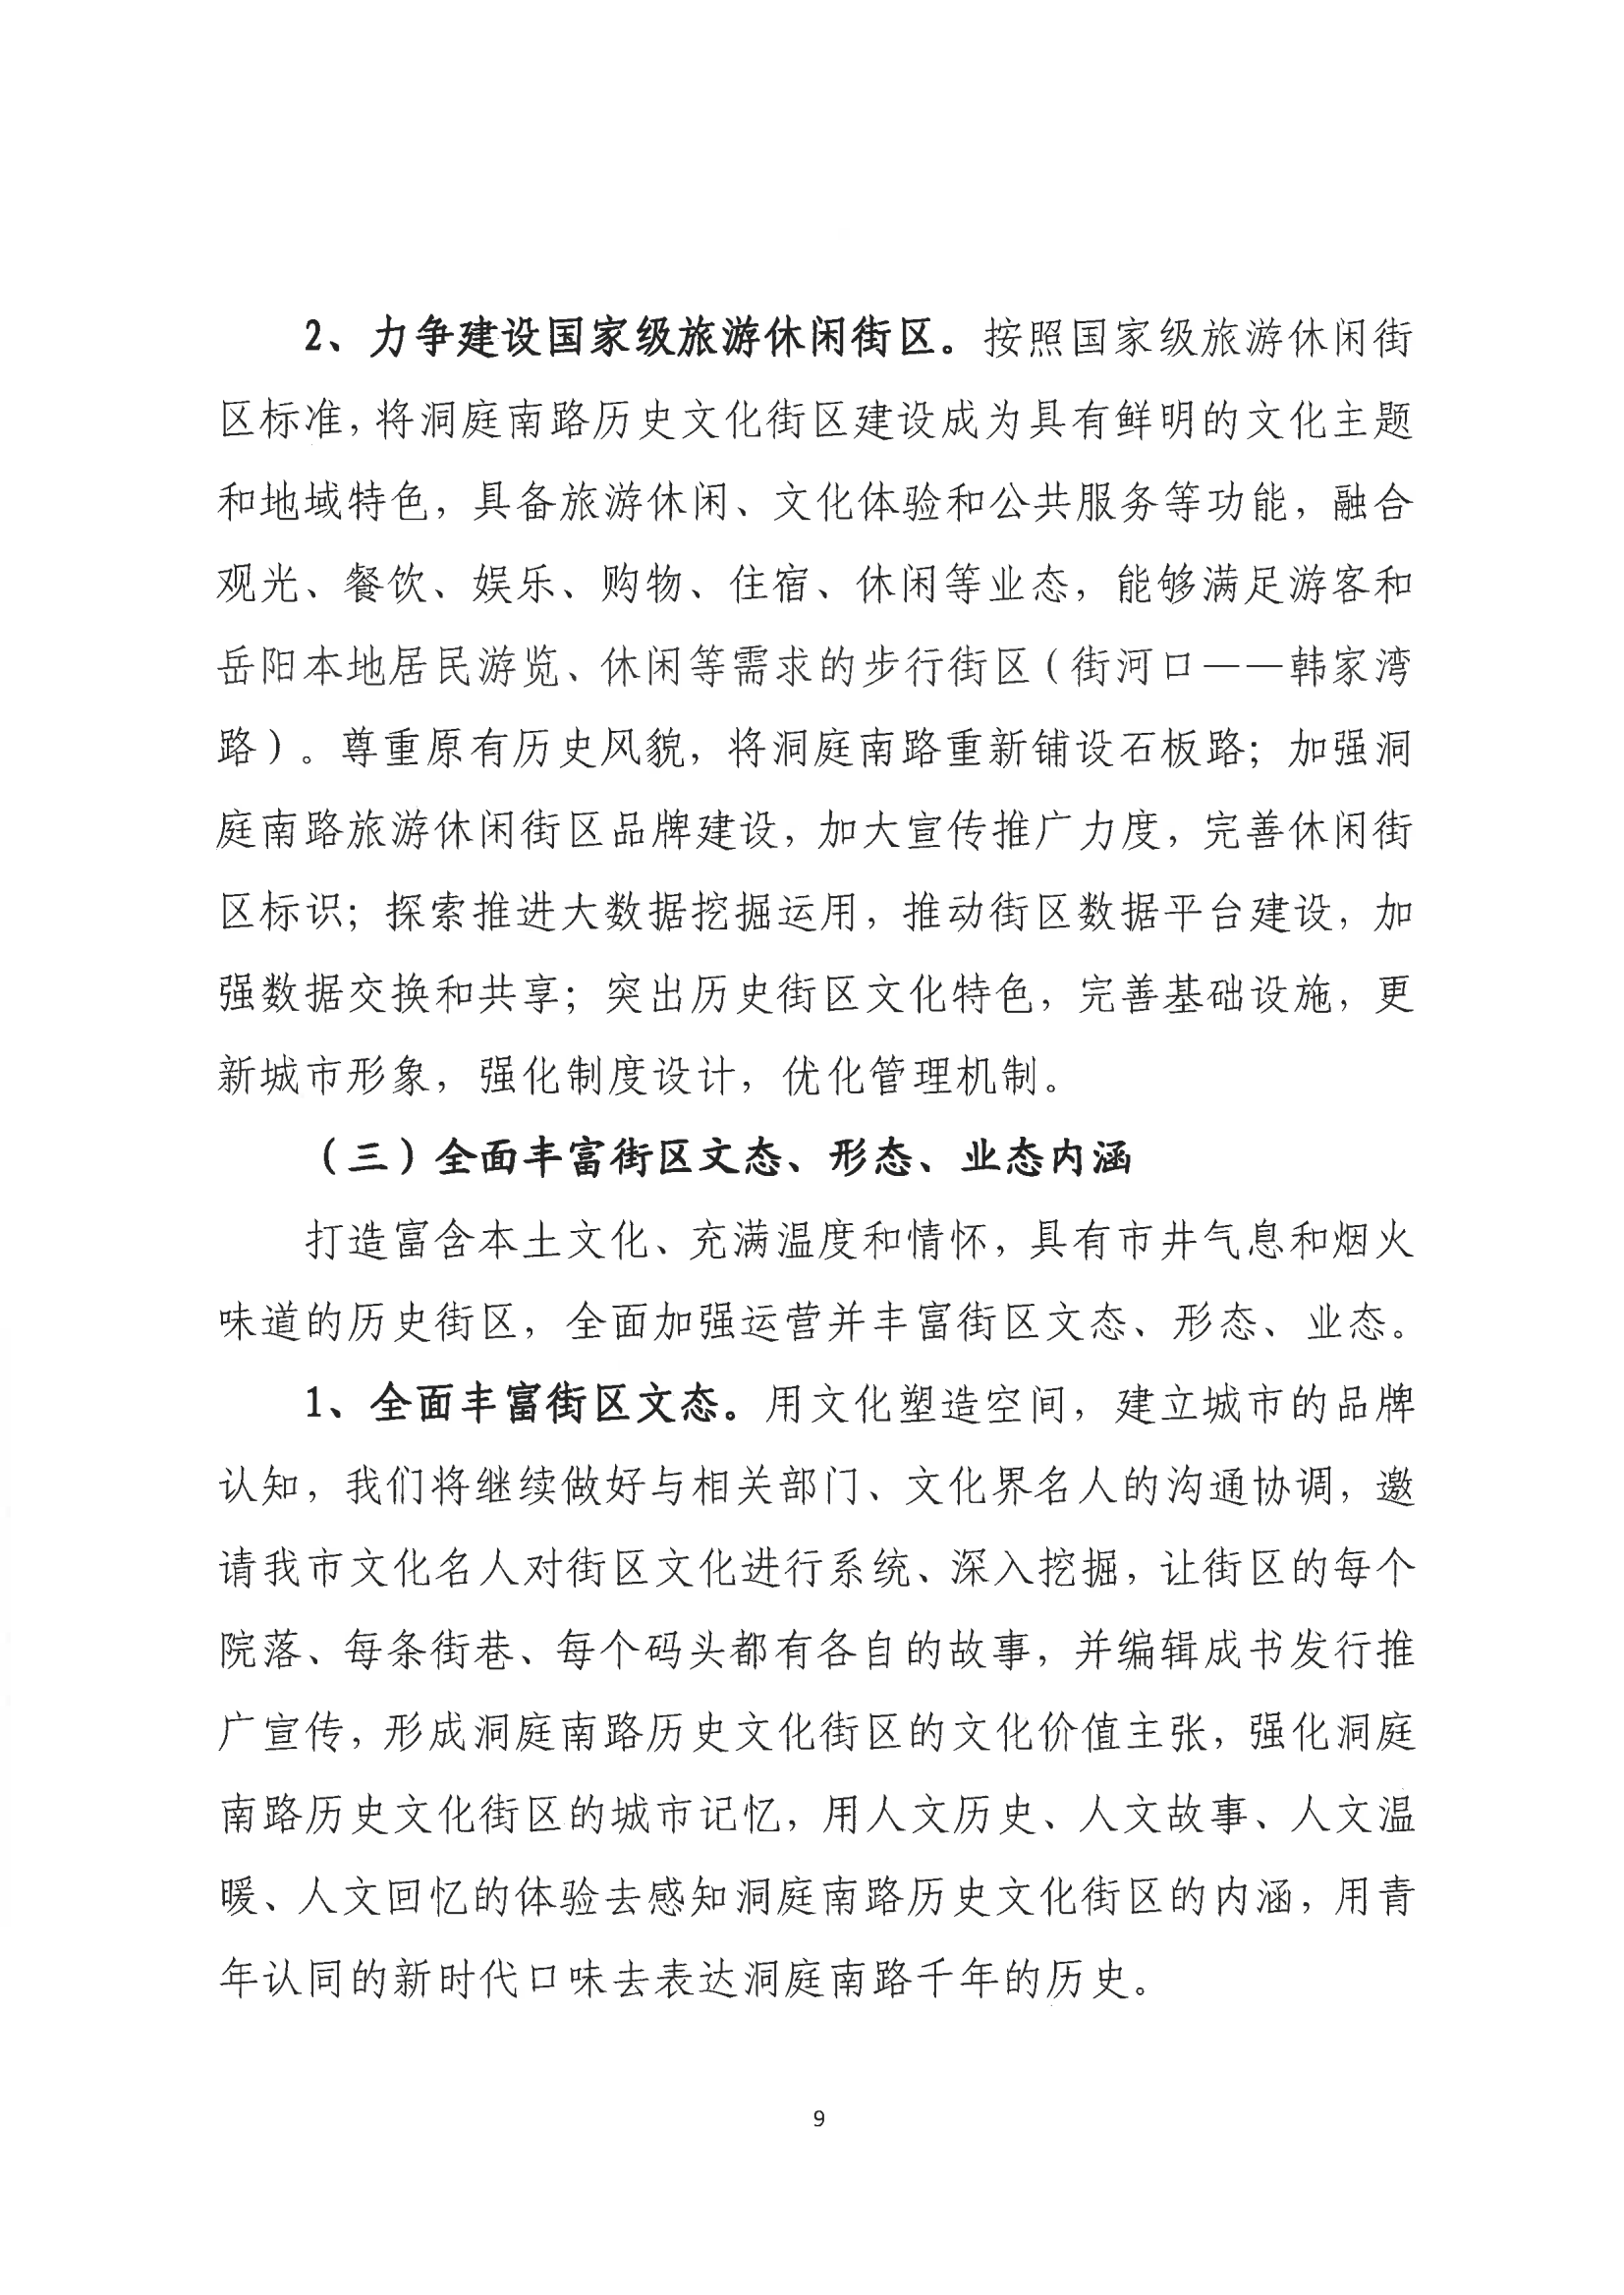 001号提案关于岳阳市政协九届一次会议第001号提案的回复(1)_08.png